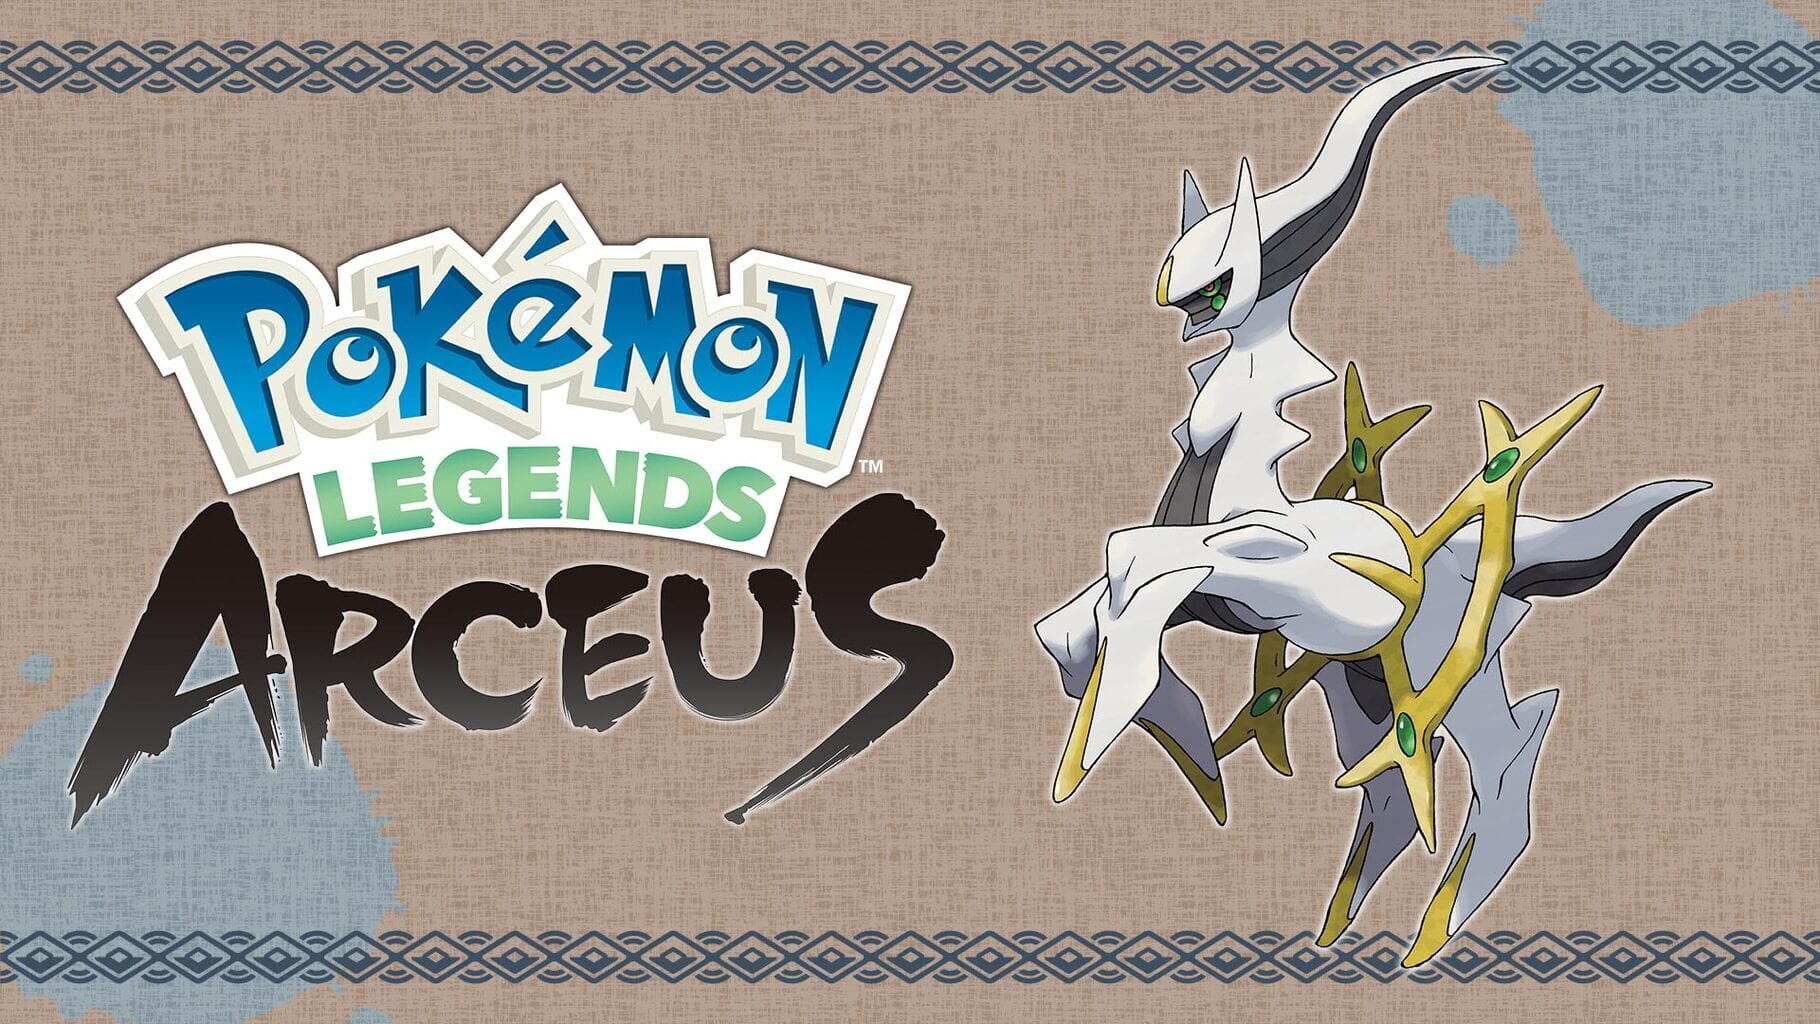 Pokémon Legends: Arceus artwork